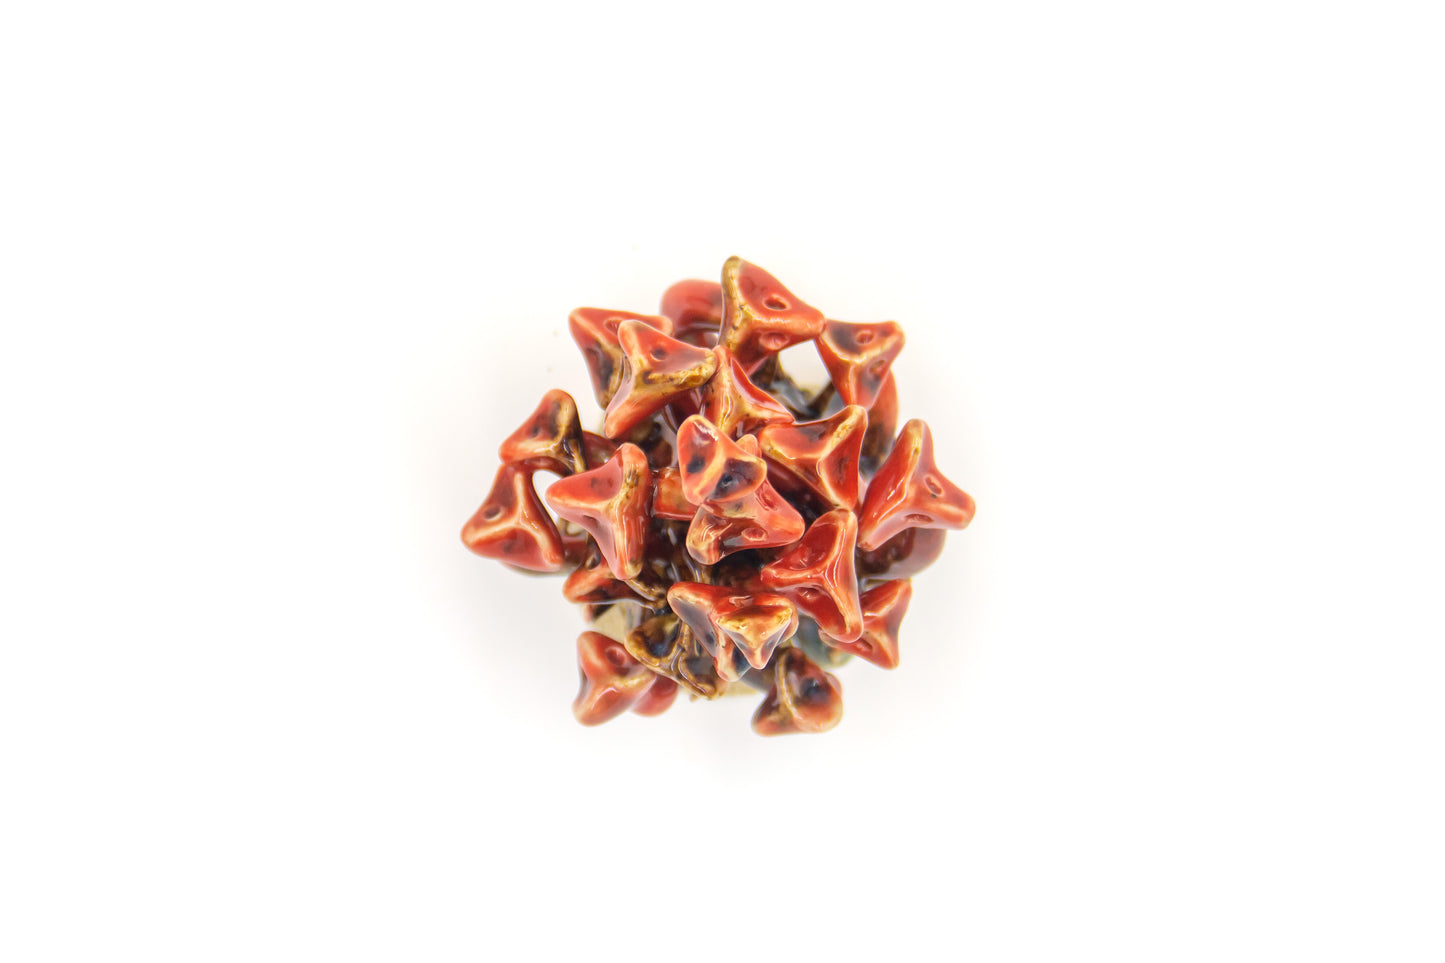 Werling pierworodny ceramiczny w kolorze czerwono-brązowym